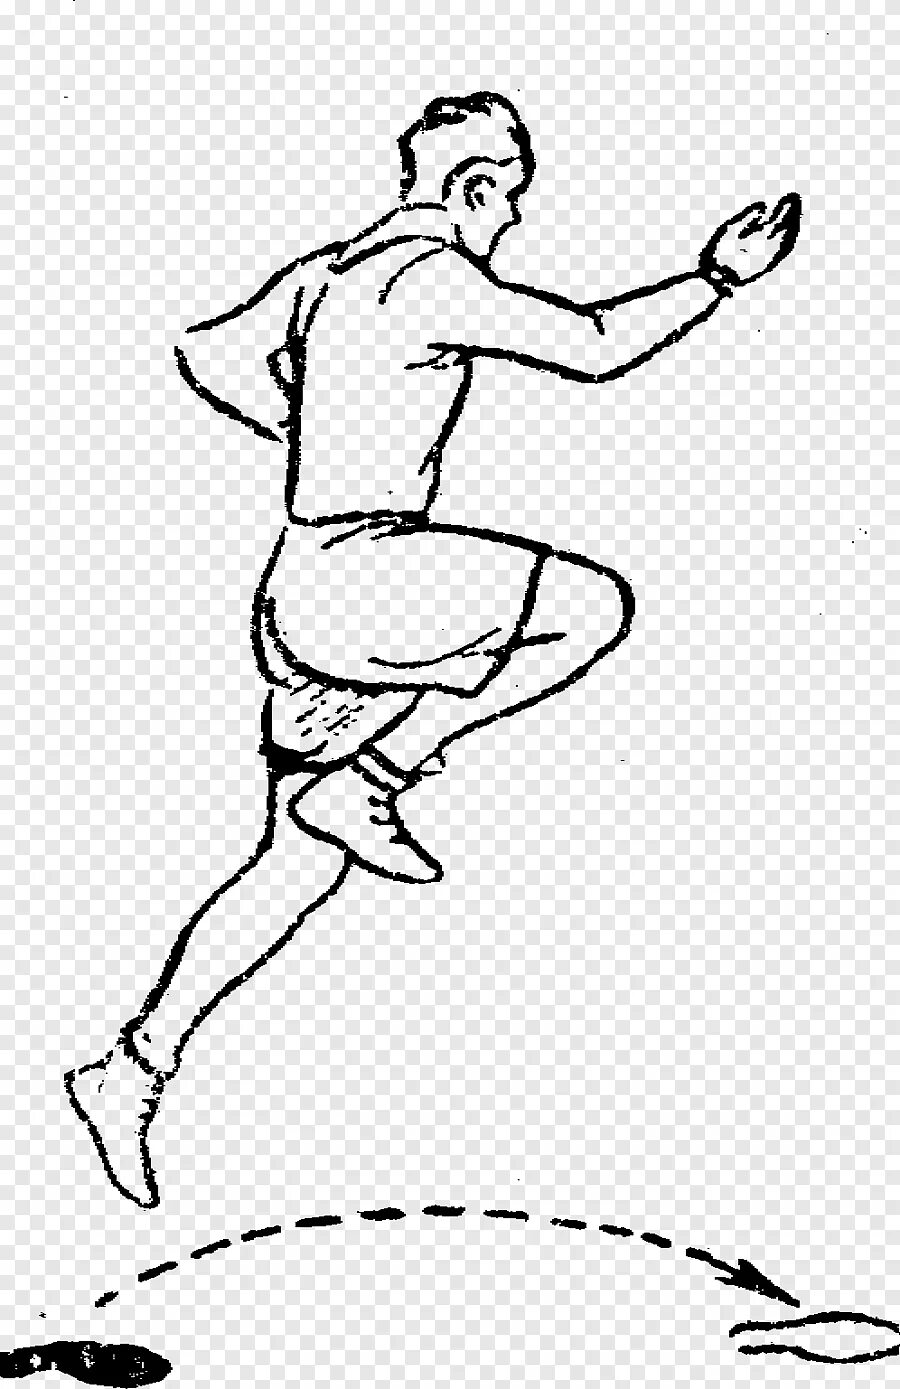 Рисунок в длину. Прыжки на одной ноге. Скачки на одной ноге. Человек прыгает на одной ноге. Прыжок рисунок.